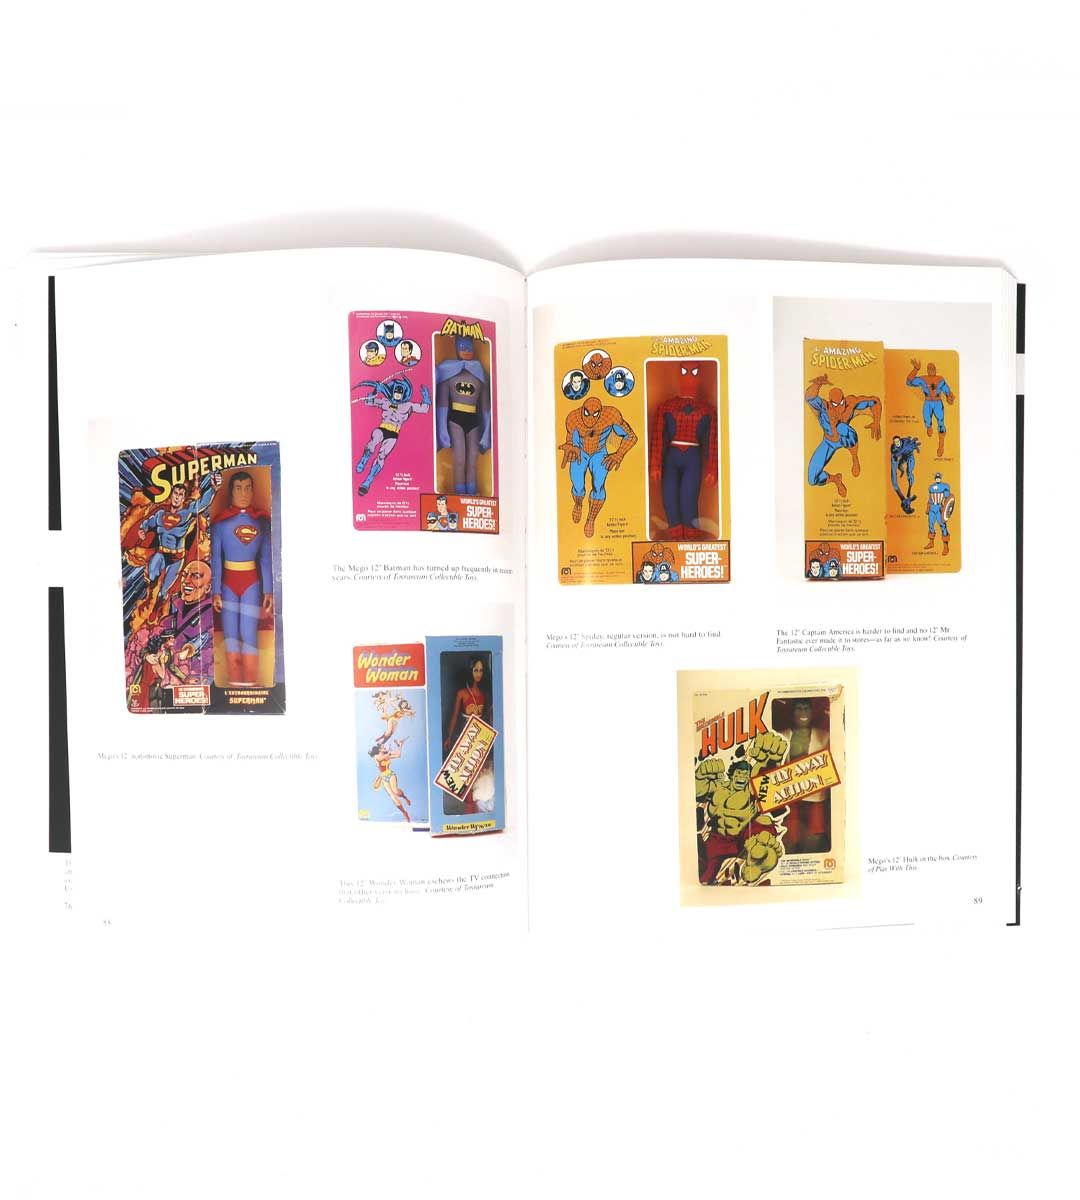 Héroe de cómics toys - Un libro de Schiffer para coleccionistas